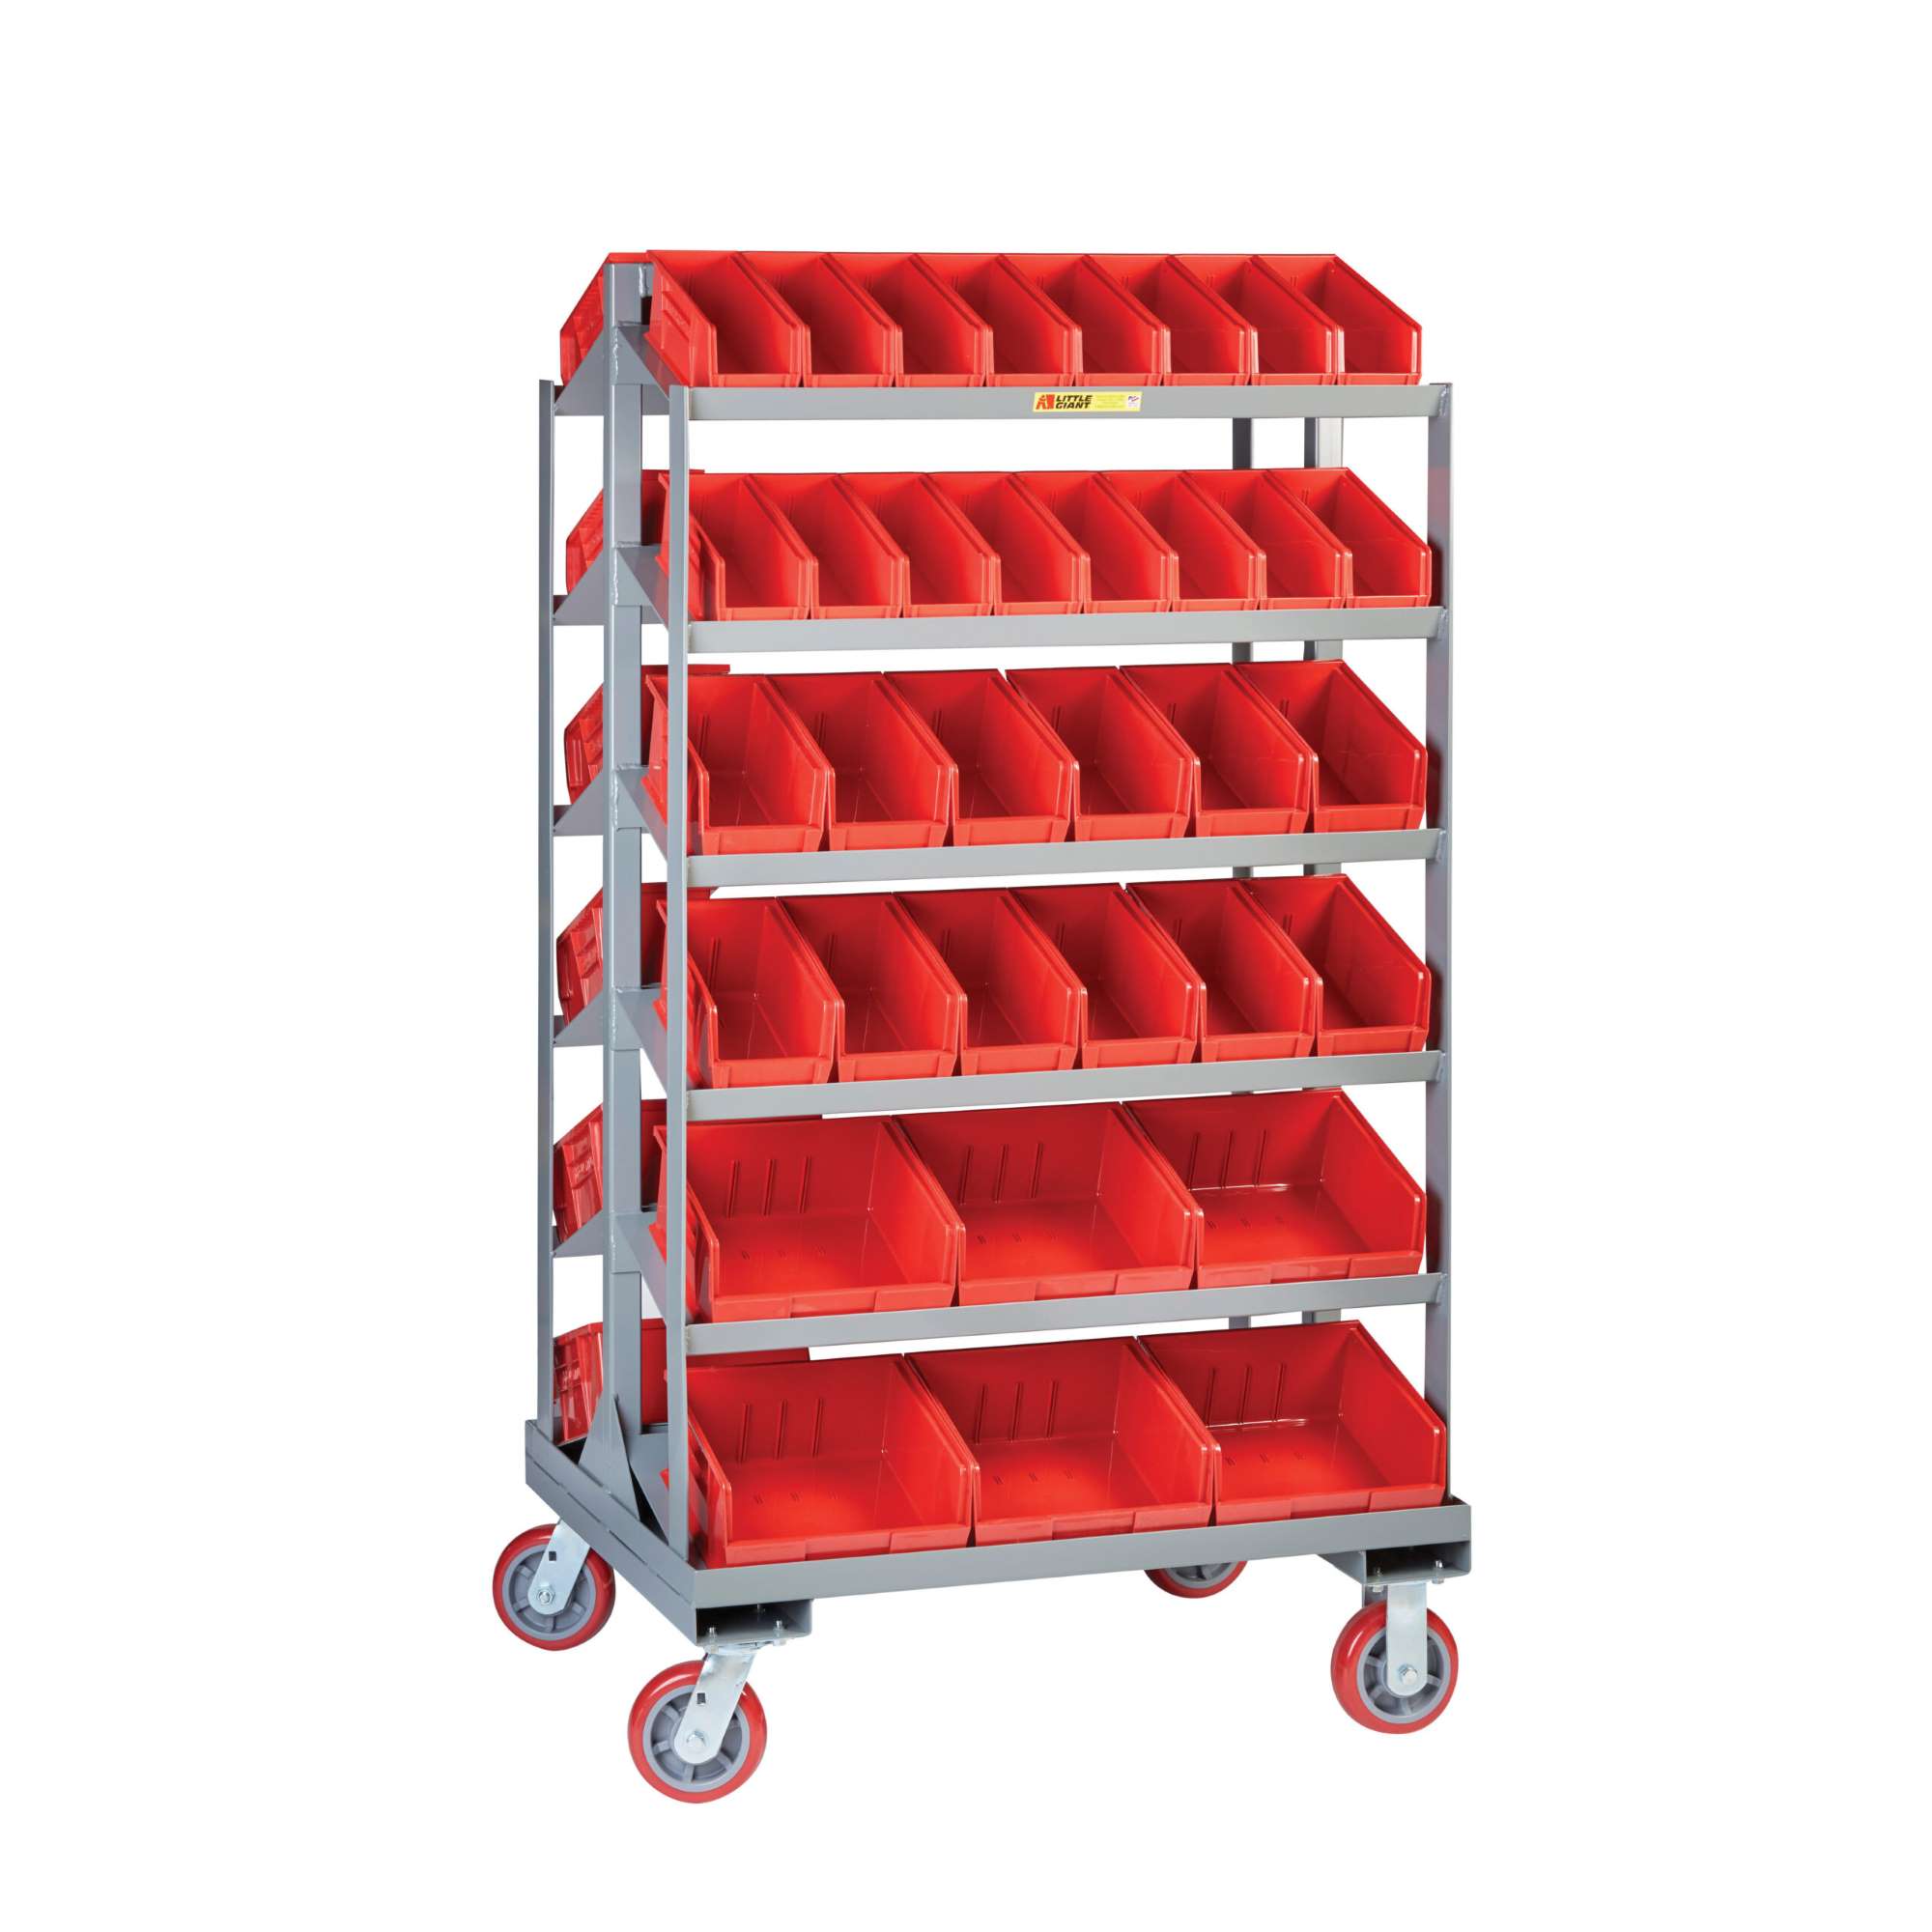 Little Giant sloped shelf bin cart, Twelve shelves, two-sided bin cart, 15 deg sloped shelves, Accommodates bins 11-7/8"D x 8"H, 6" wheels